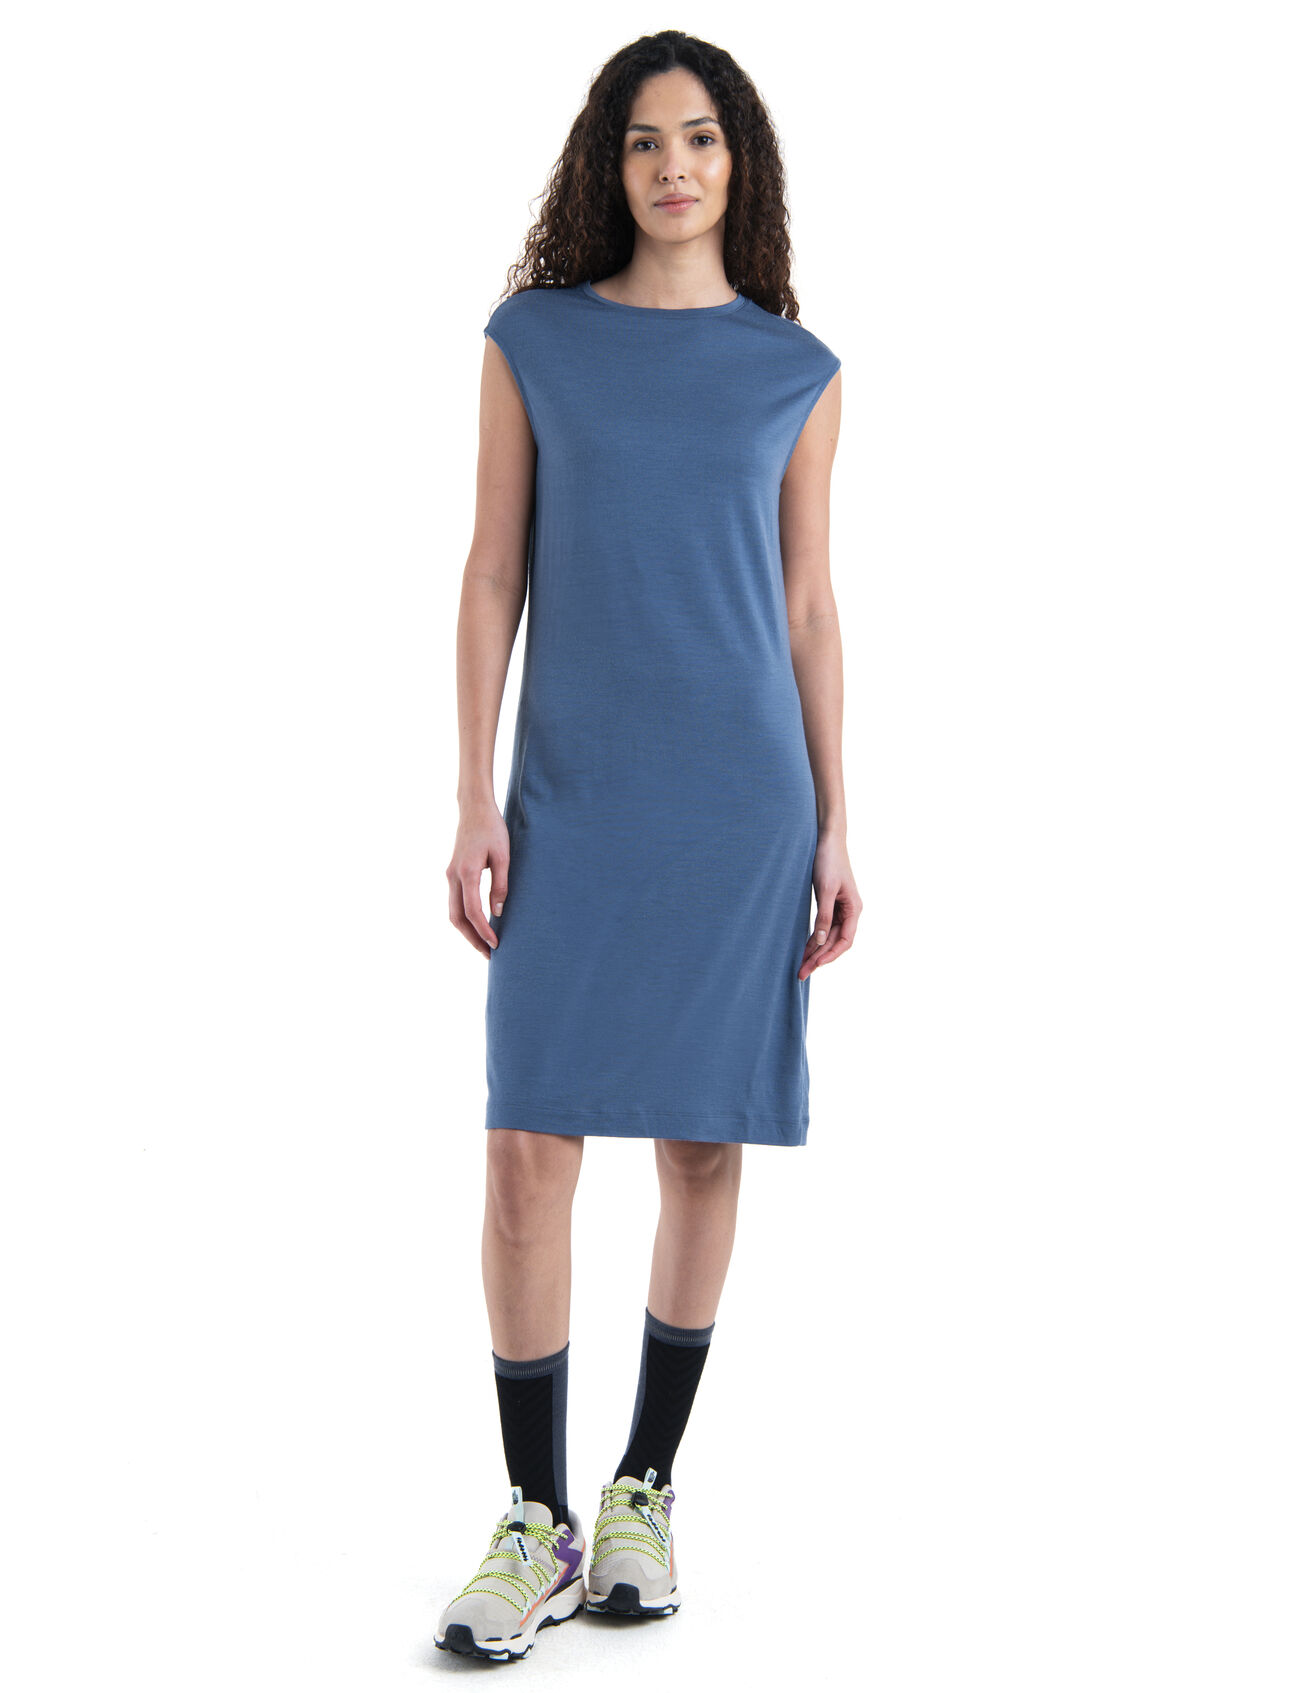 Dam Granary ärmlös klänning i merino Granary ärmlös klänning är ett lättskött plagg som kombinerar mjuk och mångsidig stil med de naturliga fördelarna med 100% Merinoull. På så sätt passar denna klänning till alla tillfällen. 